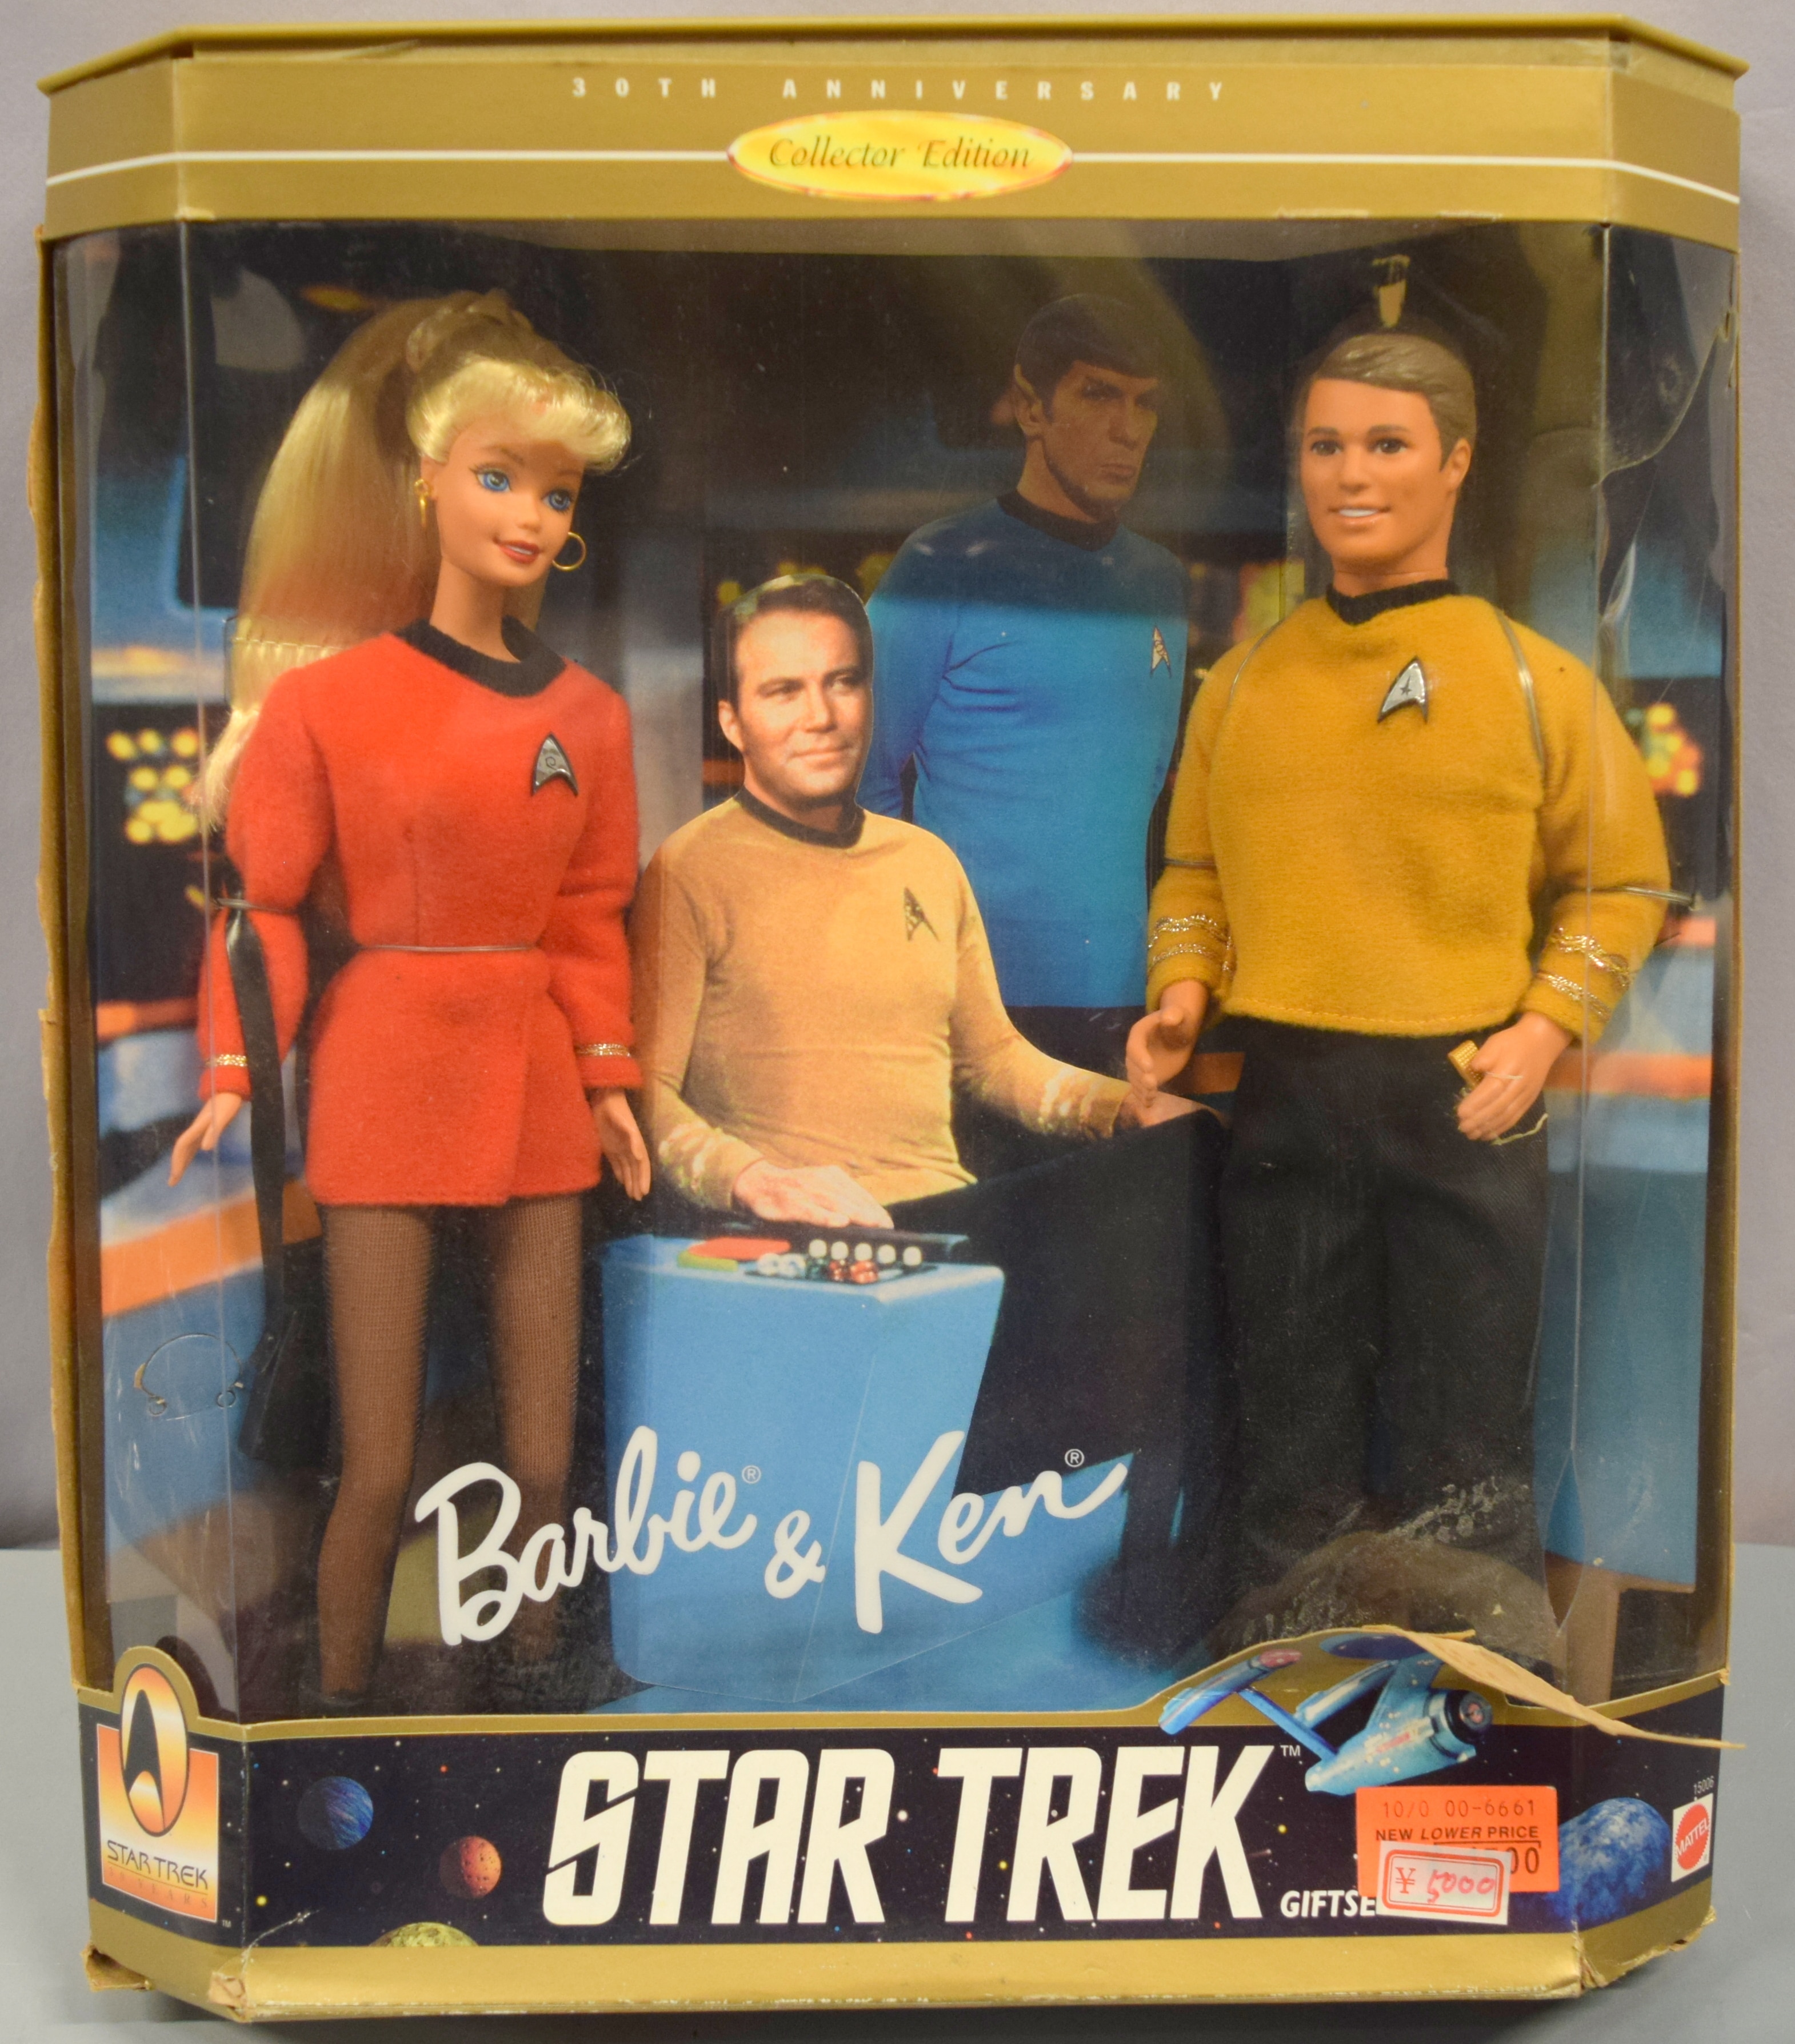 バービー バービー人形 ケン Star Trek 30th Avviversary Collector's